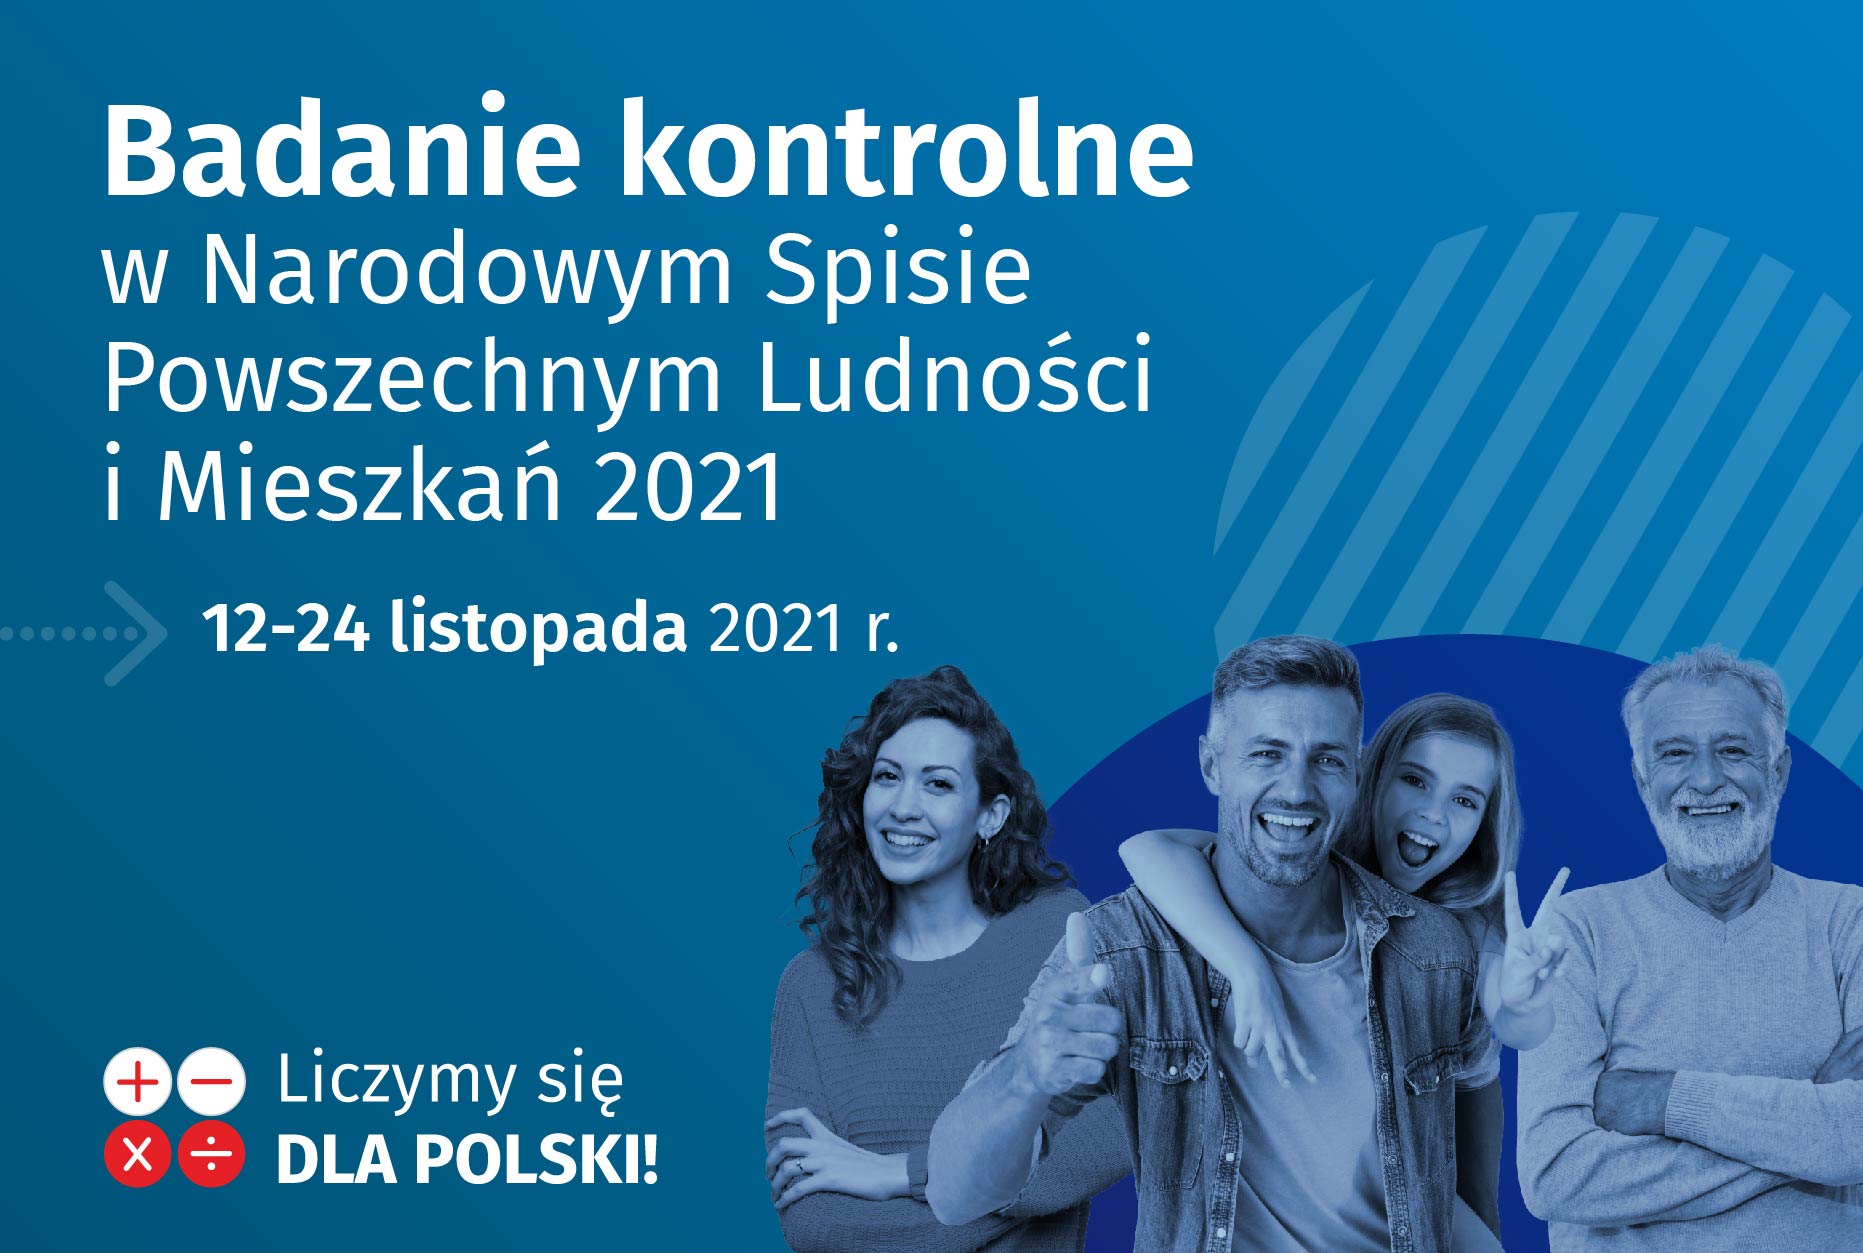 Plakat: Badanie kontrolne w Narodowym Spisie Ludności i Mieszkań 2021. 12-24 listopada 2021. Liczymy się dla Polski.